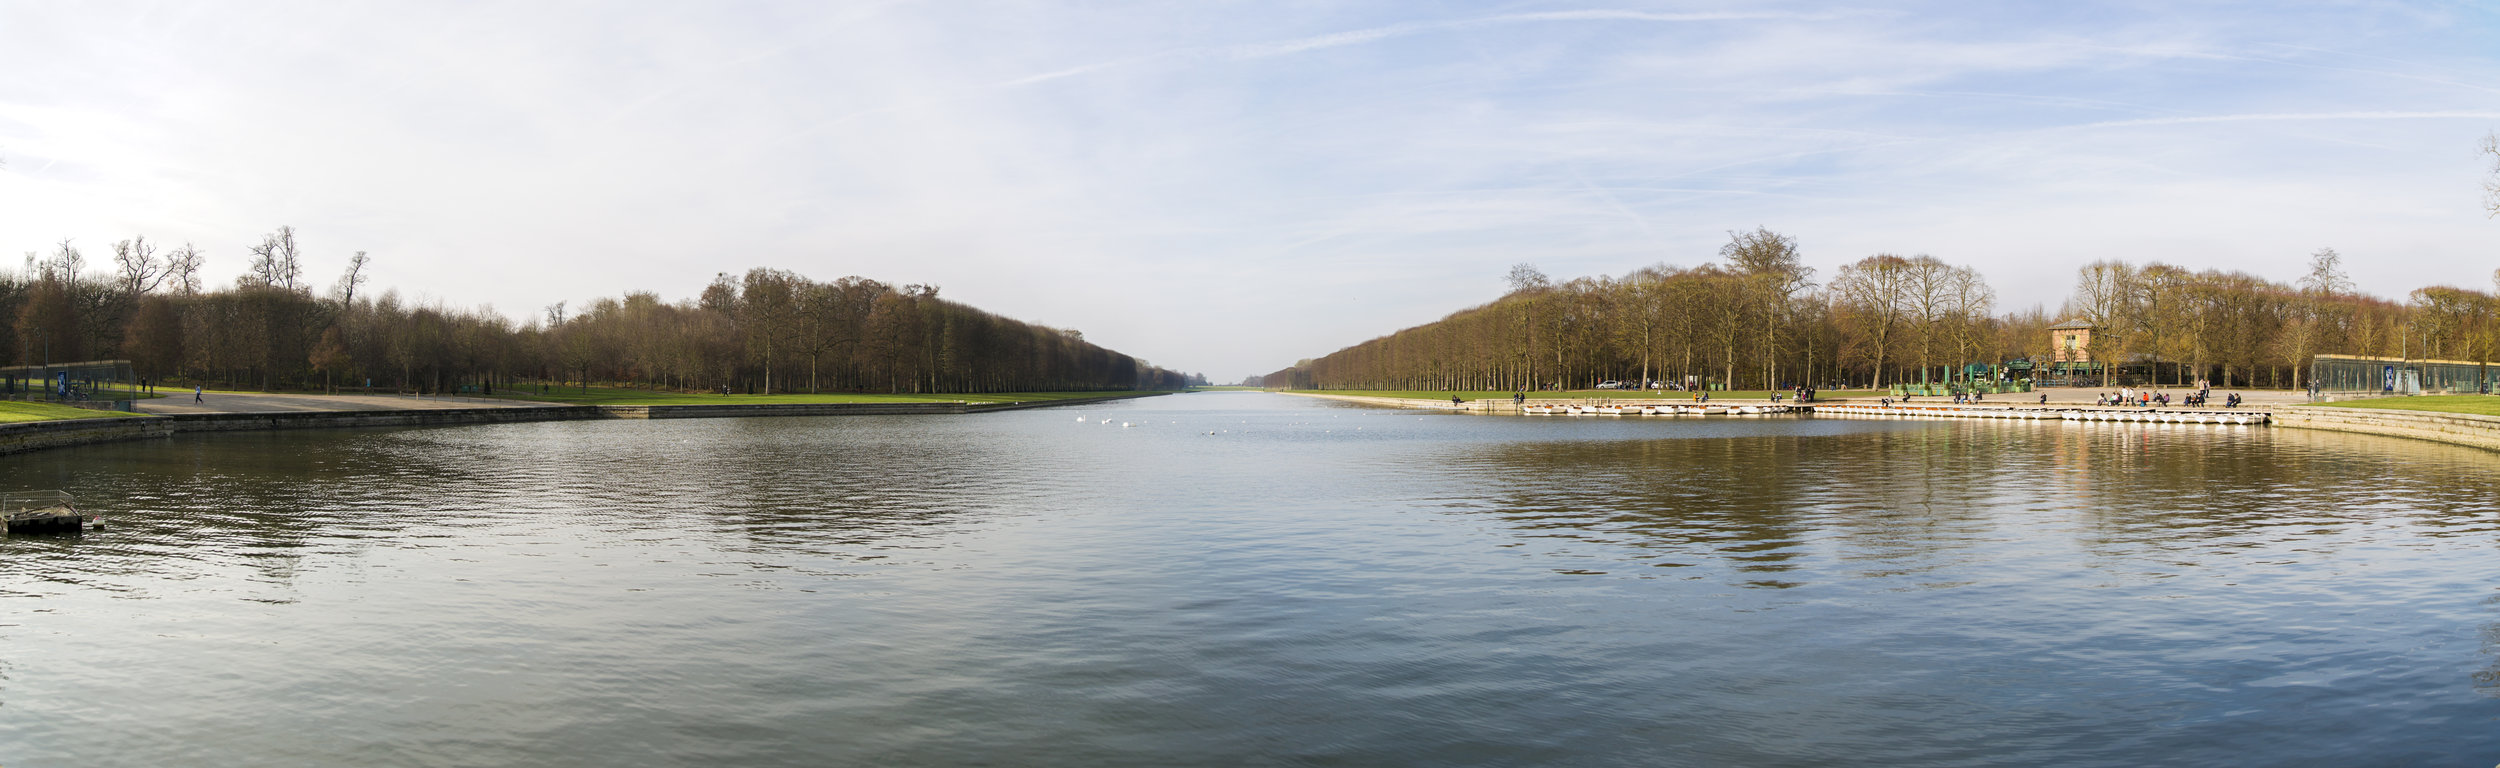 Versailles_Panorama1.jpg